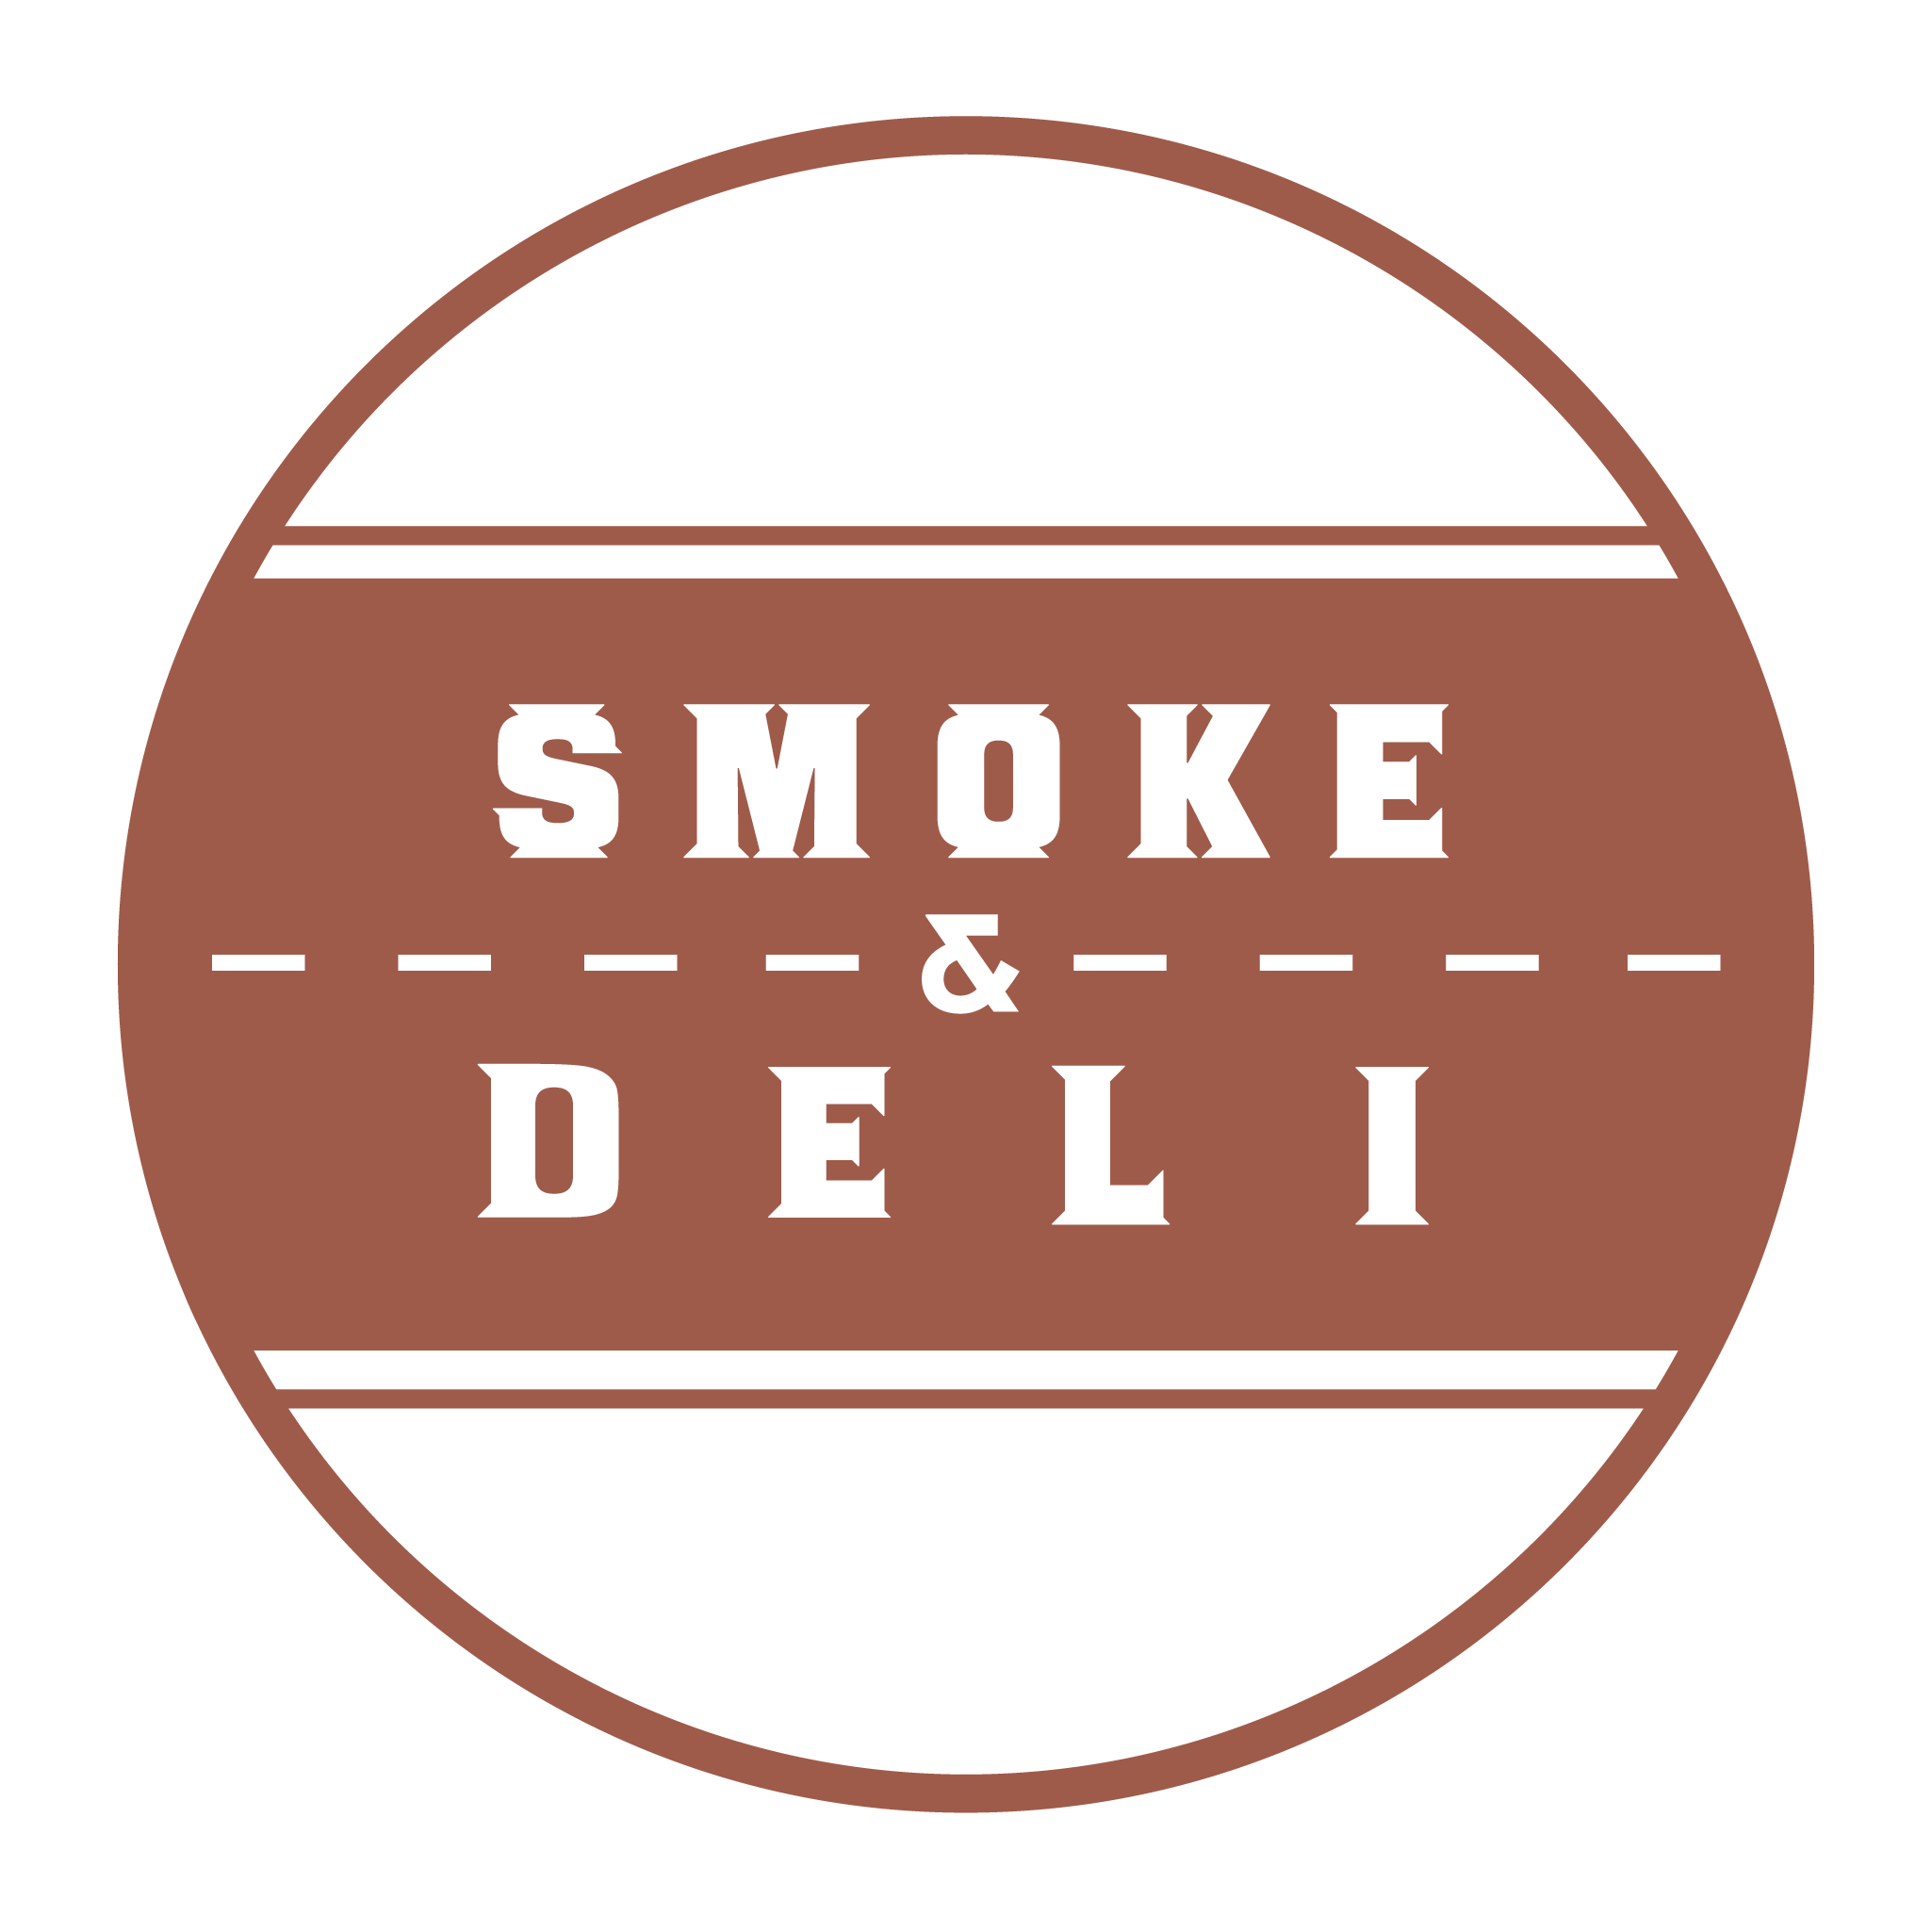 Smoke & Deli